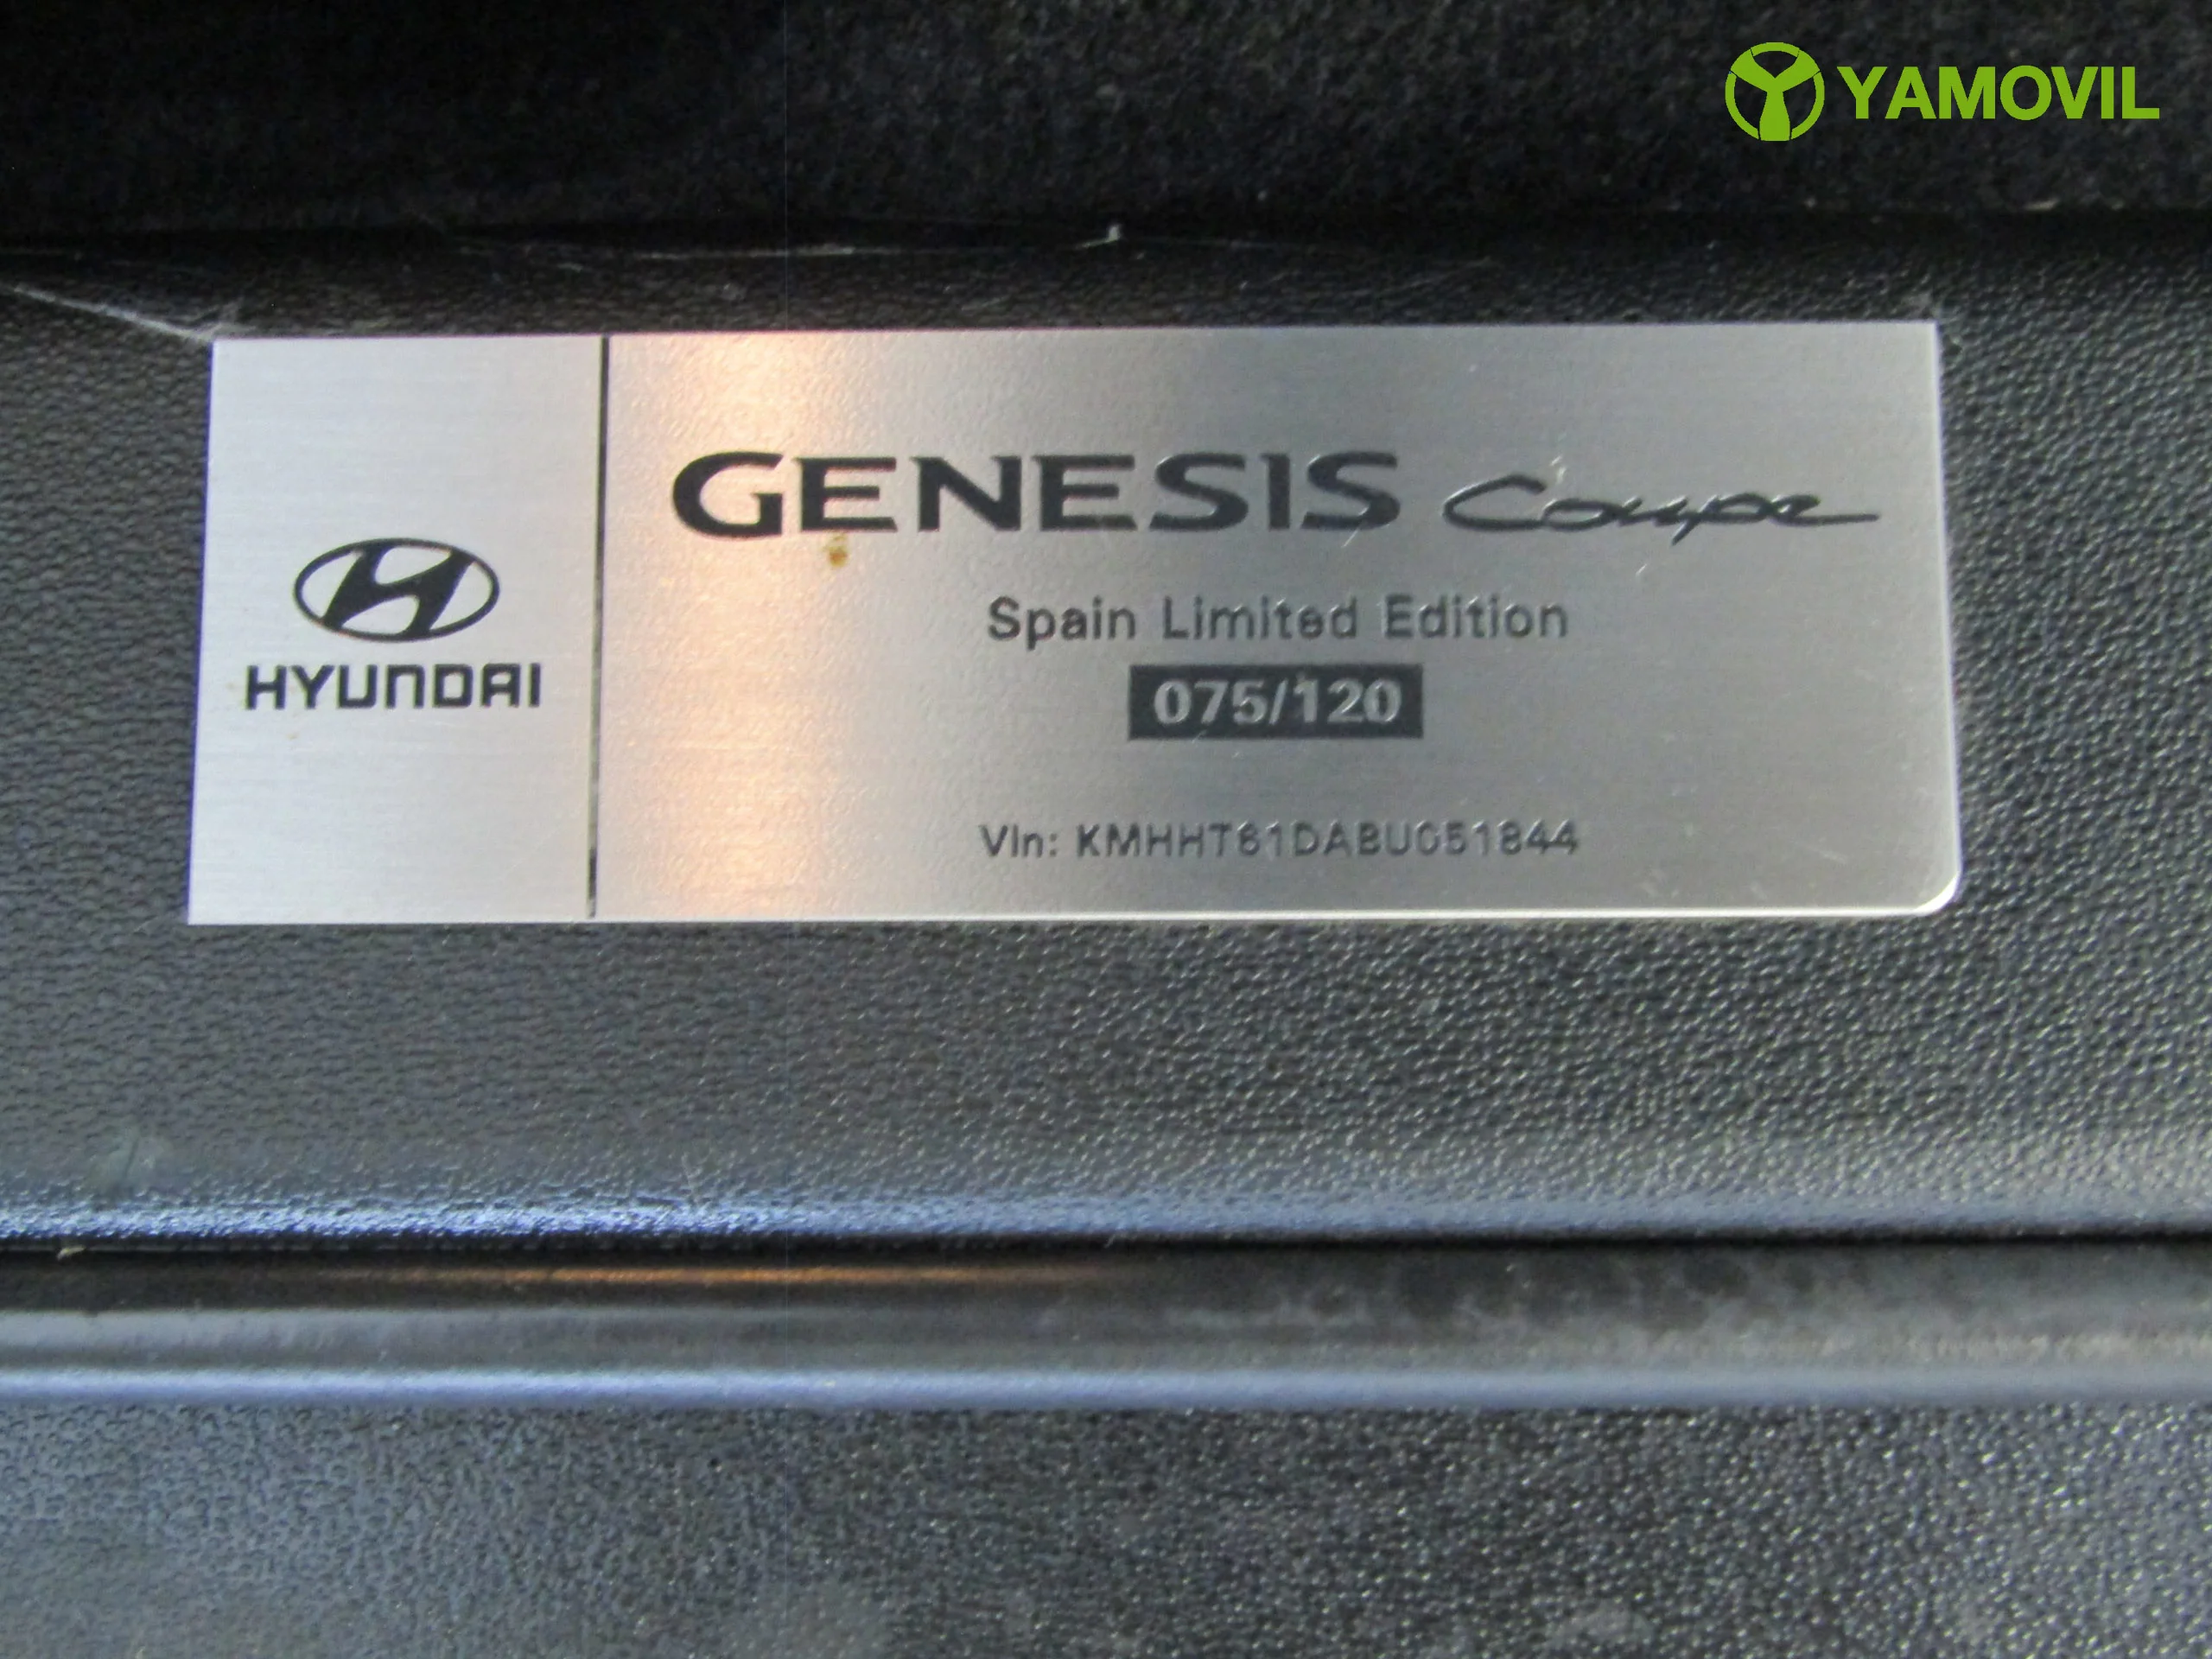 Hyundai Genesis Coupe 2.0T 213CV - Foto 7